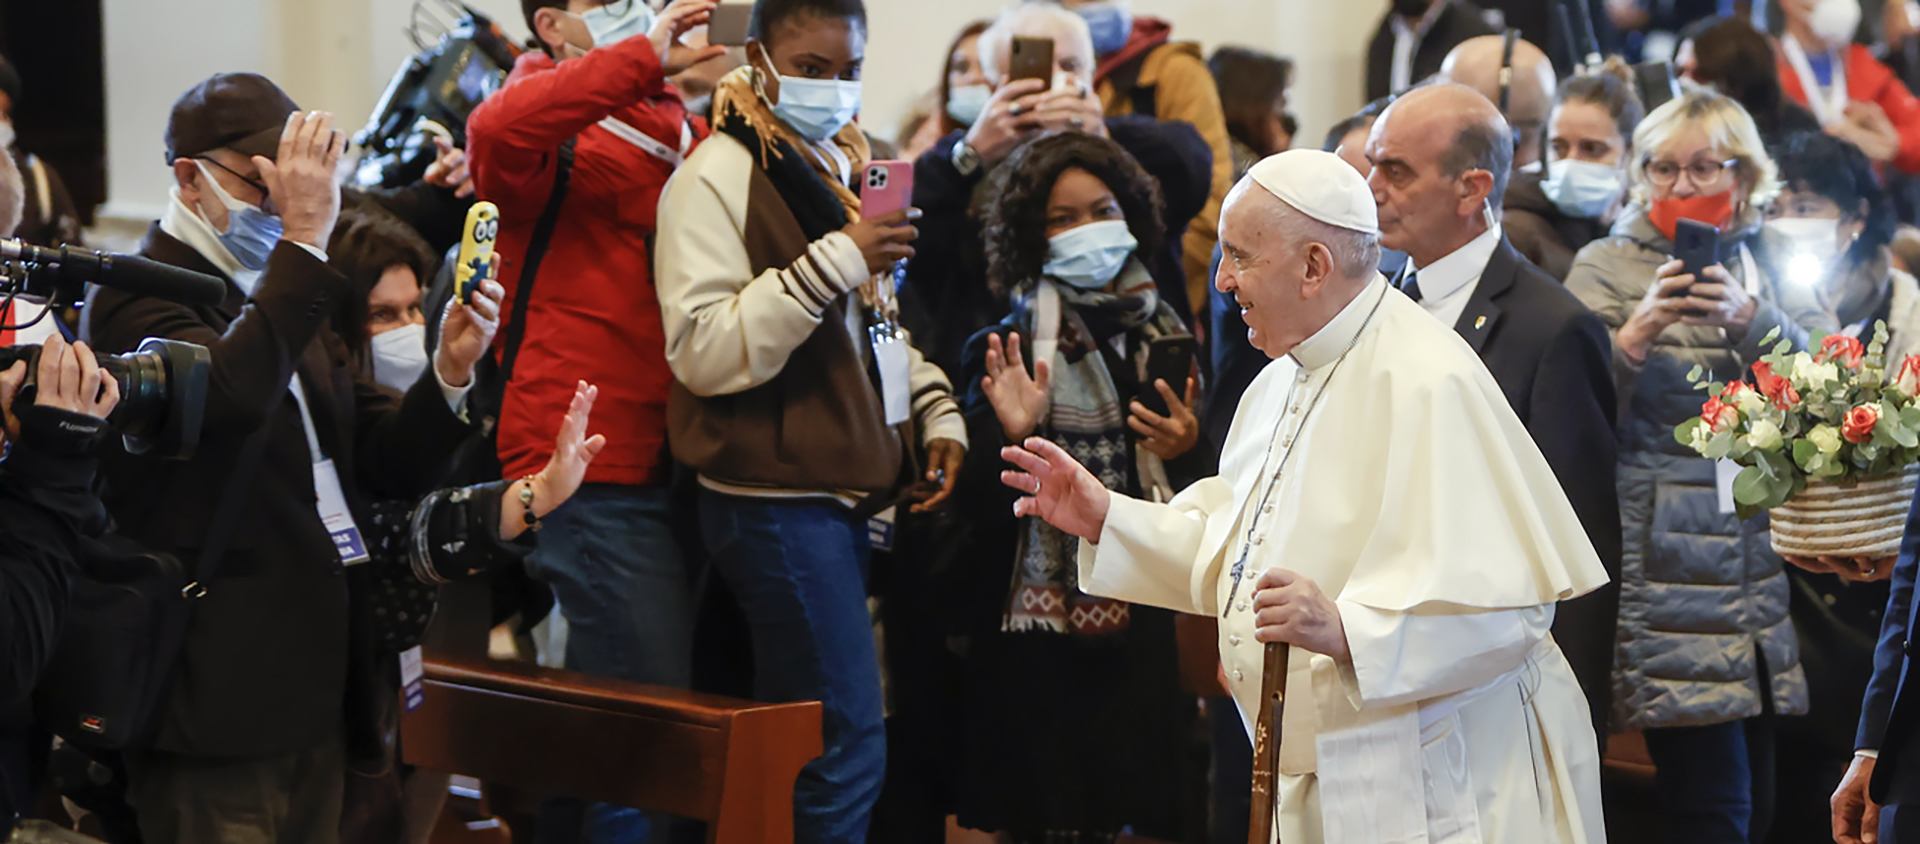 Le pape a rencontré 500 pauvres à Assise, la ville d'où est originaire saint François | © Keystone/AP Photo/Riccardo De Luca